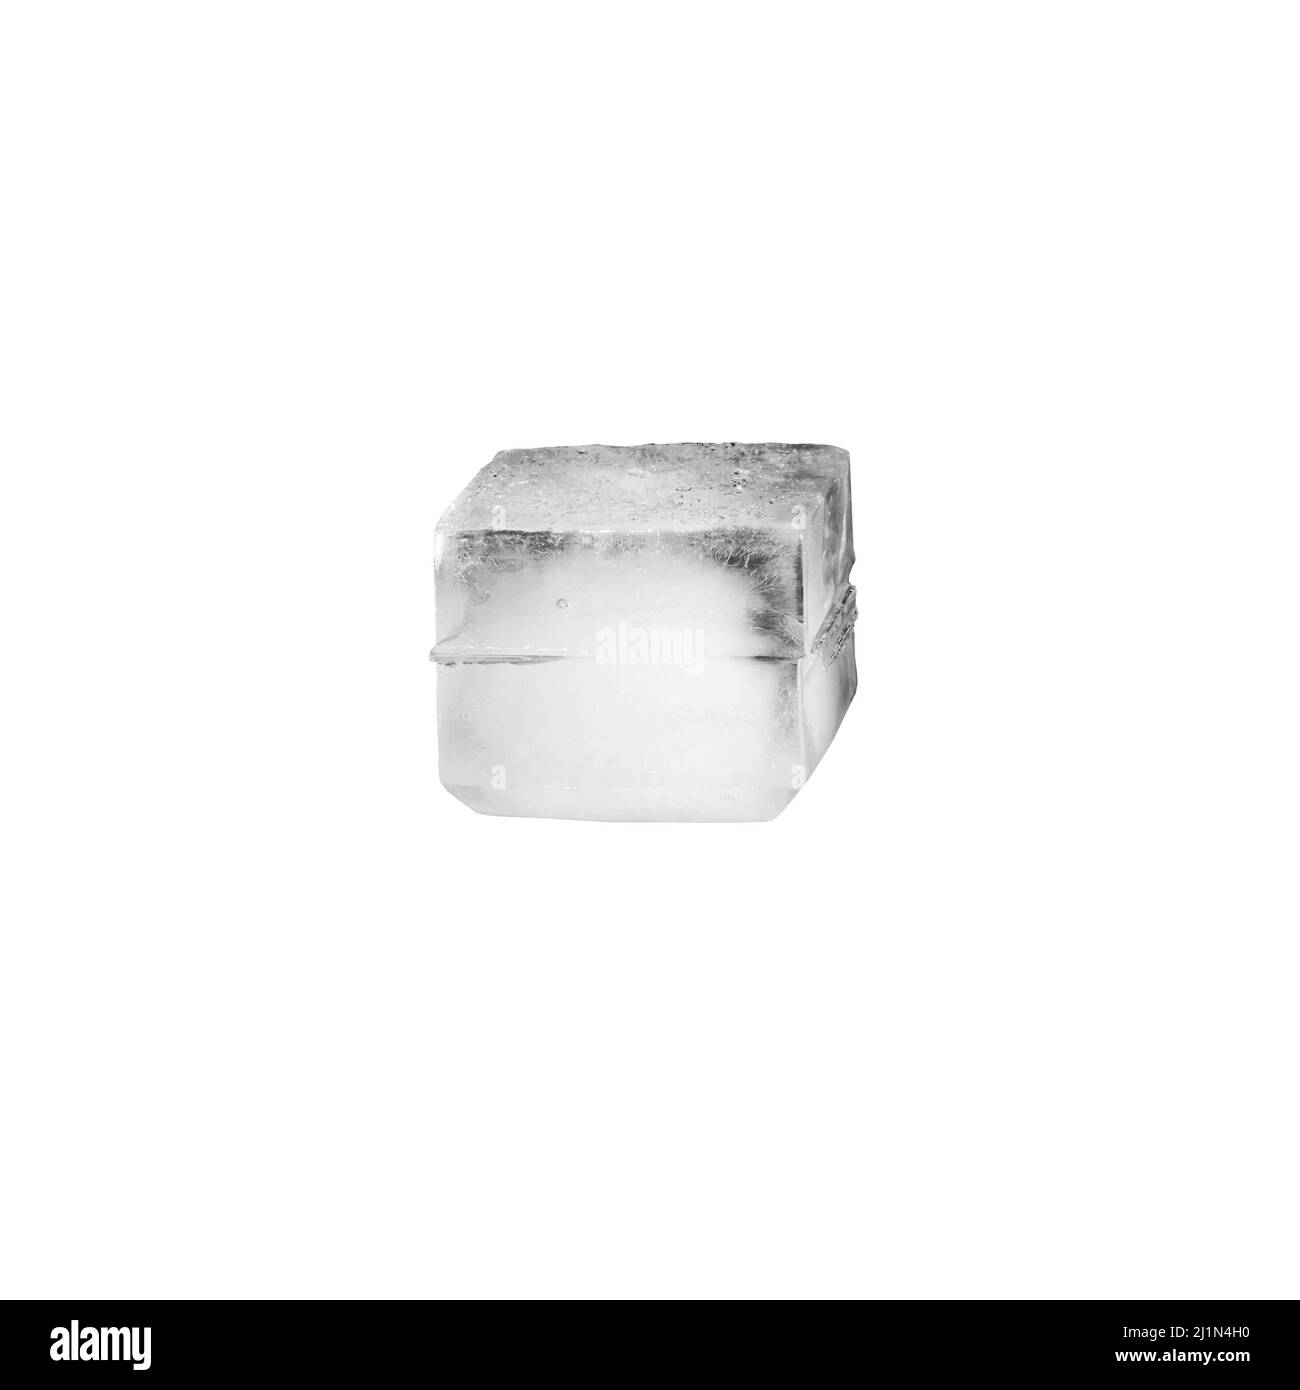 Estudio de un cubo de hielo real sobre fondo blanco Foto de stock